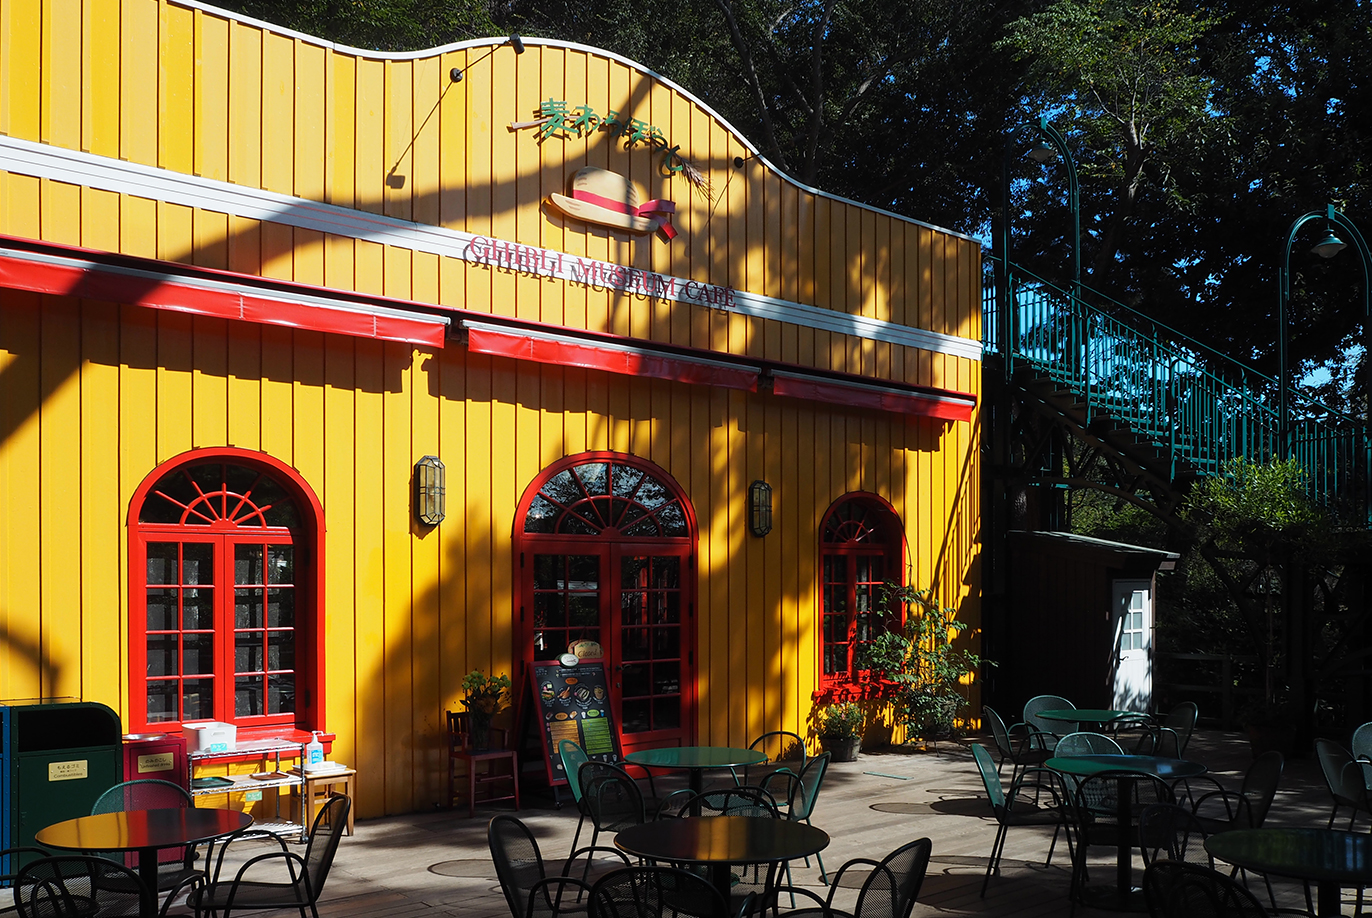 オレンジの外壁が特徴的なカフェ「麦わらぼうし」